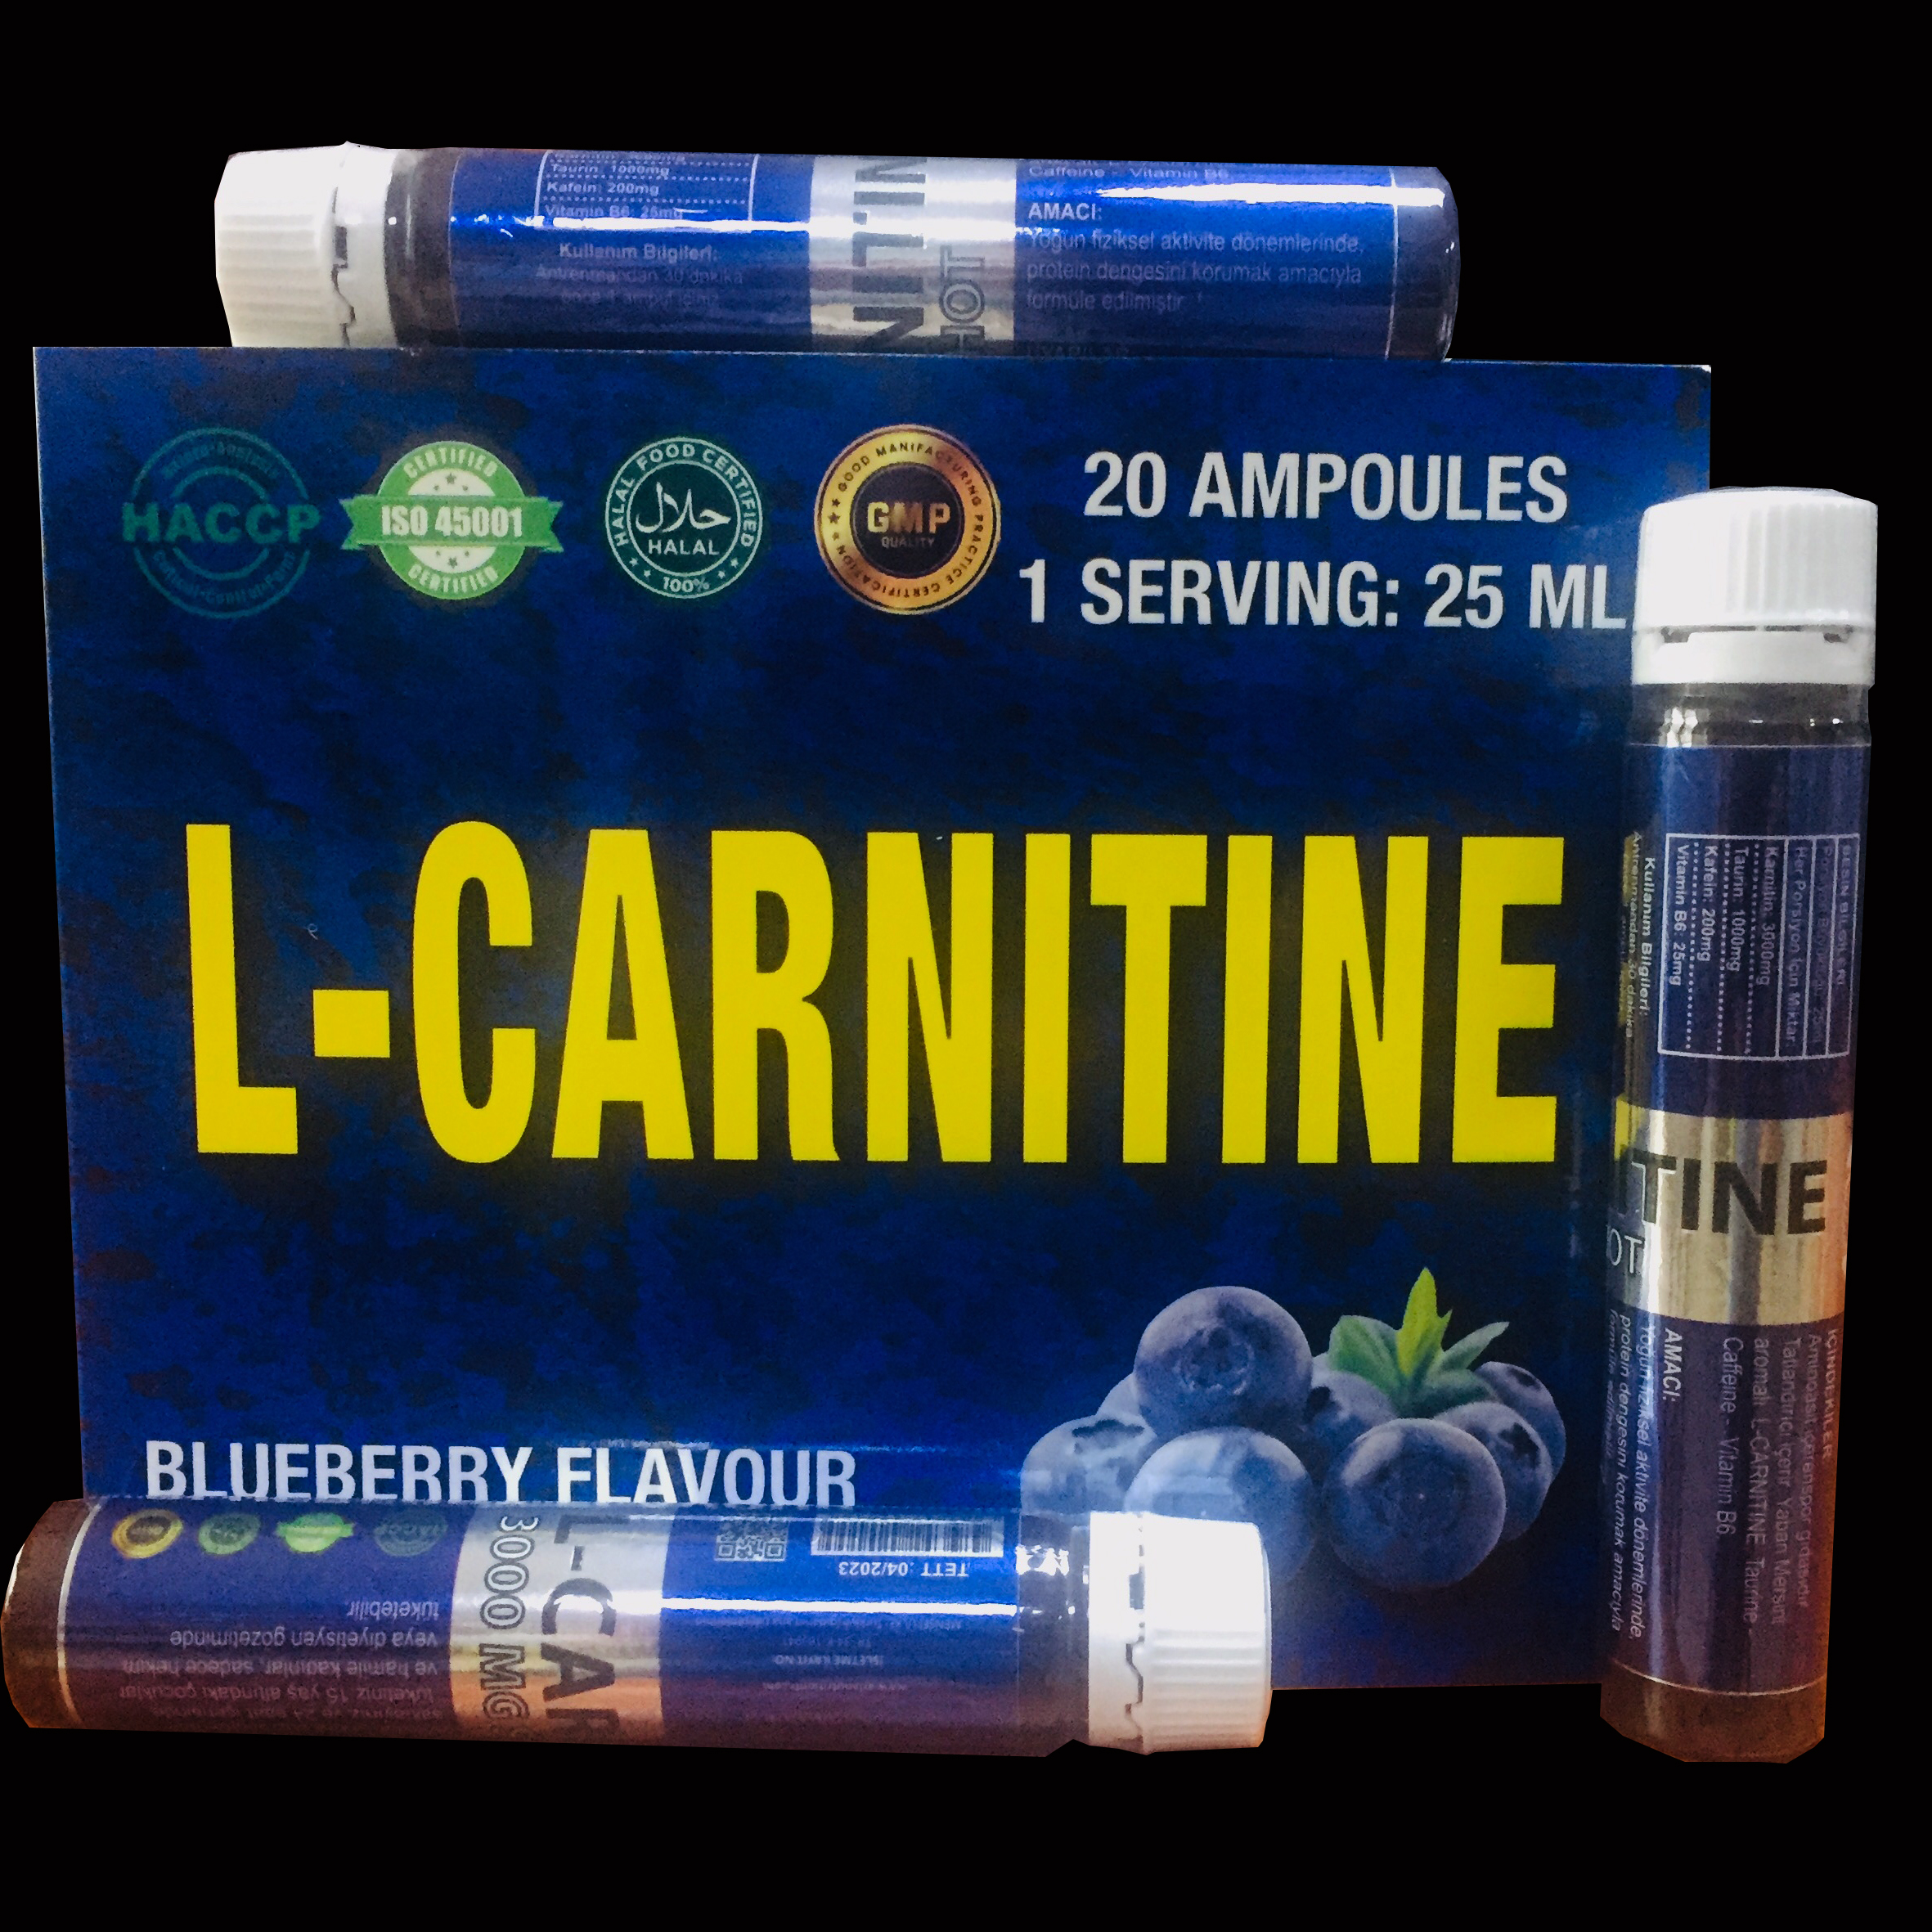 Lcarnitine arianutrition 20 ampÃ¼l